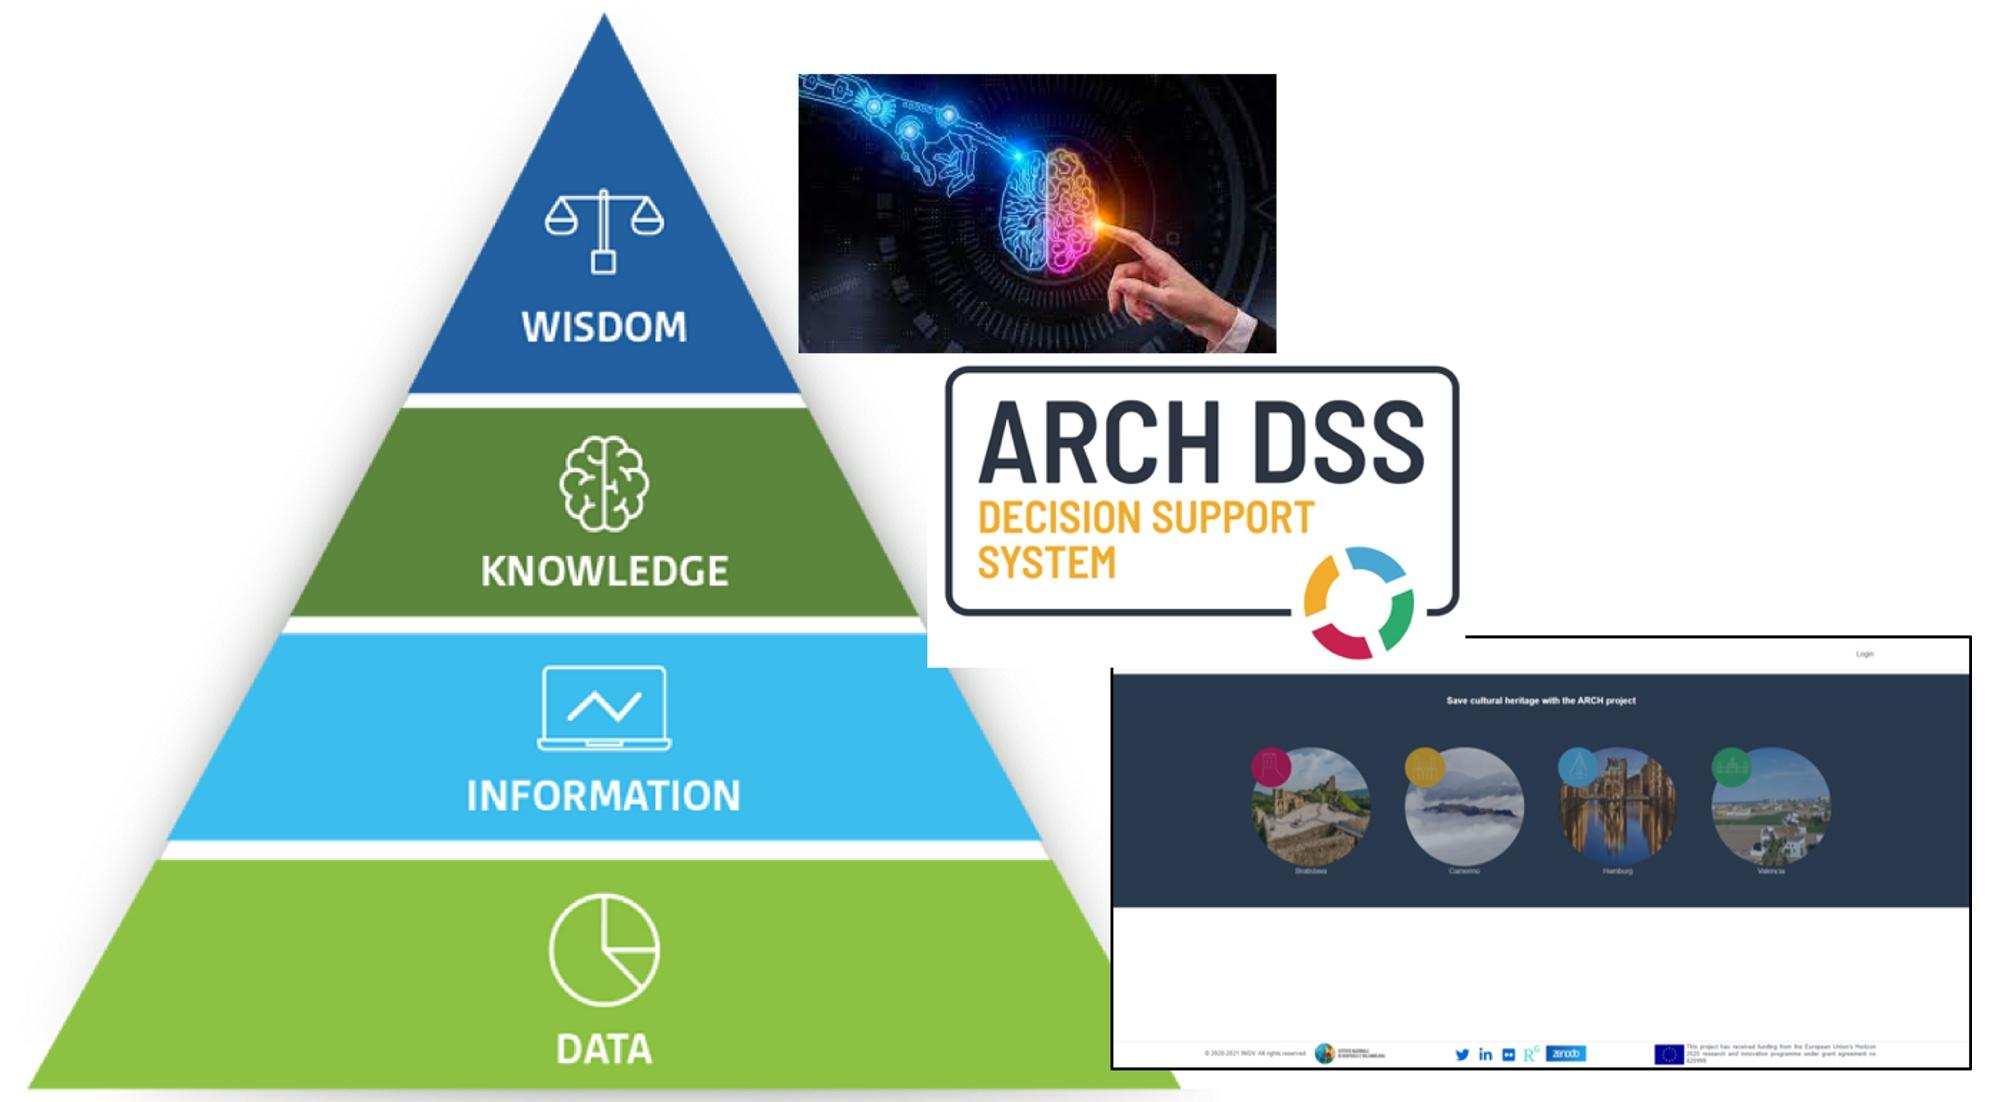 La figura mostra la piramide DIKW che prevede nell’ordine: dati (alla base); informazioni (secondo livello); conoscenza (terzo livello); saggezza (picco della piramide). In questa piramide ARCH DSS si trova al secondo livello, poiché consente di generare conoscenza a partire dalle informazioni prodotte da CIPCast DSS o da altre basi di dati. 